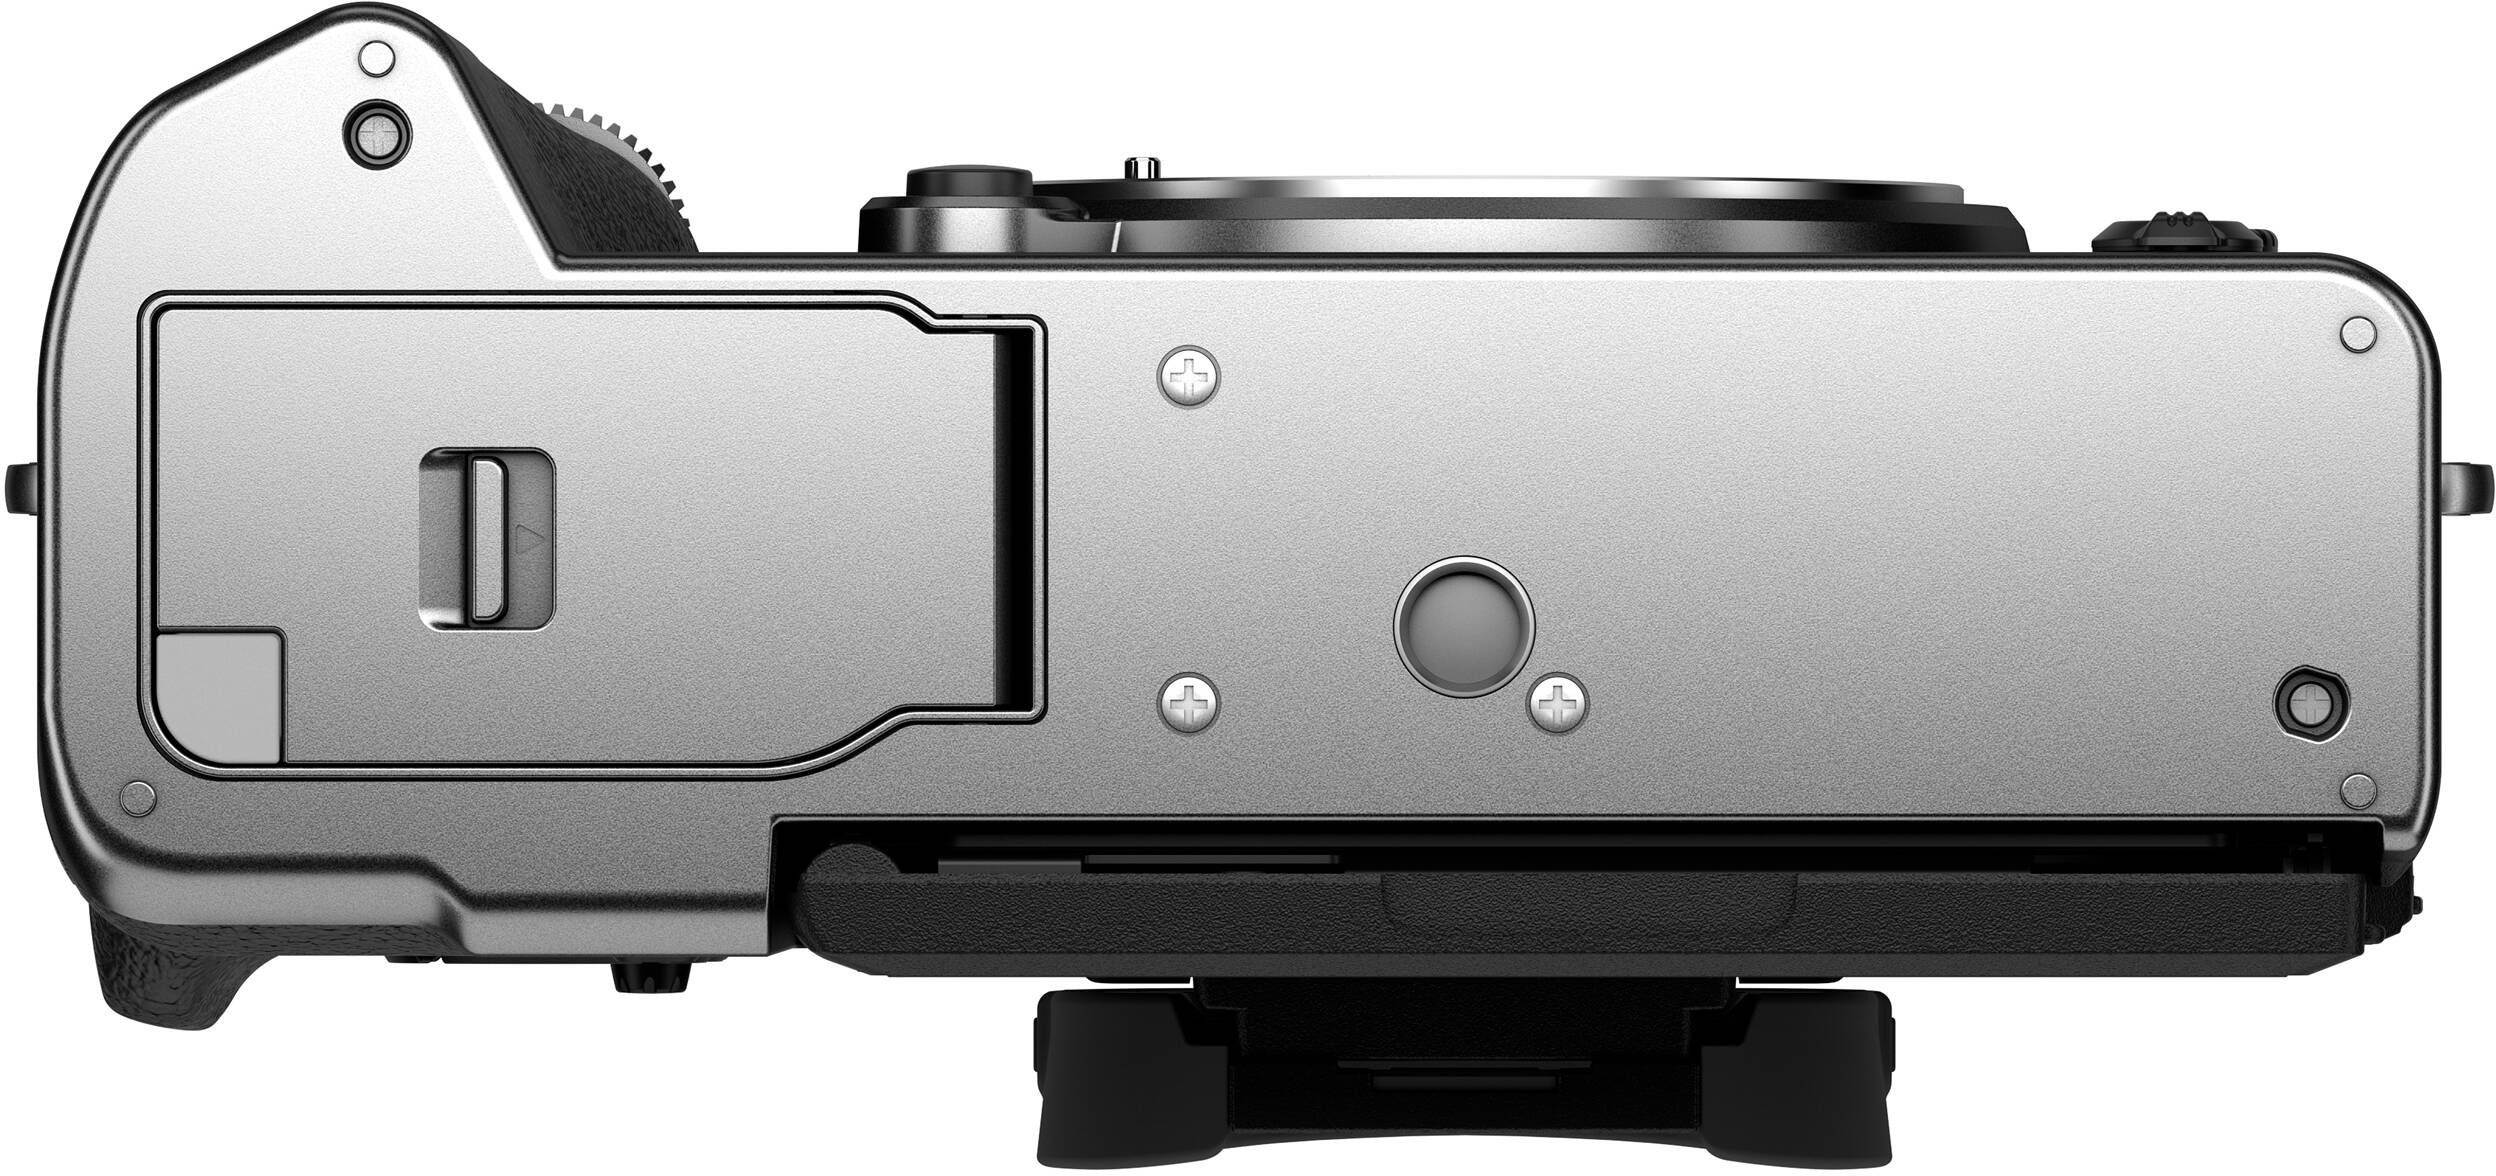 Фотоаппарат FUJIFILM X-T5 + XF 16-50mm F2.8-4.8R LM WR Silver (16842539) фото 6